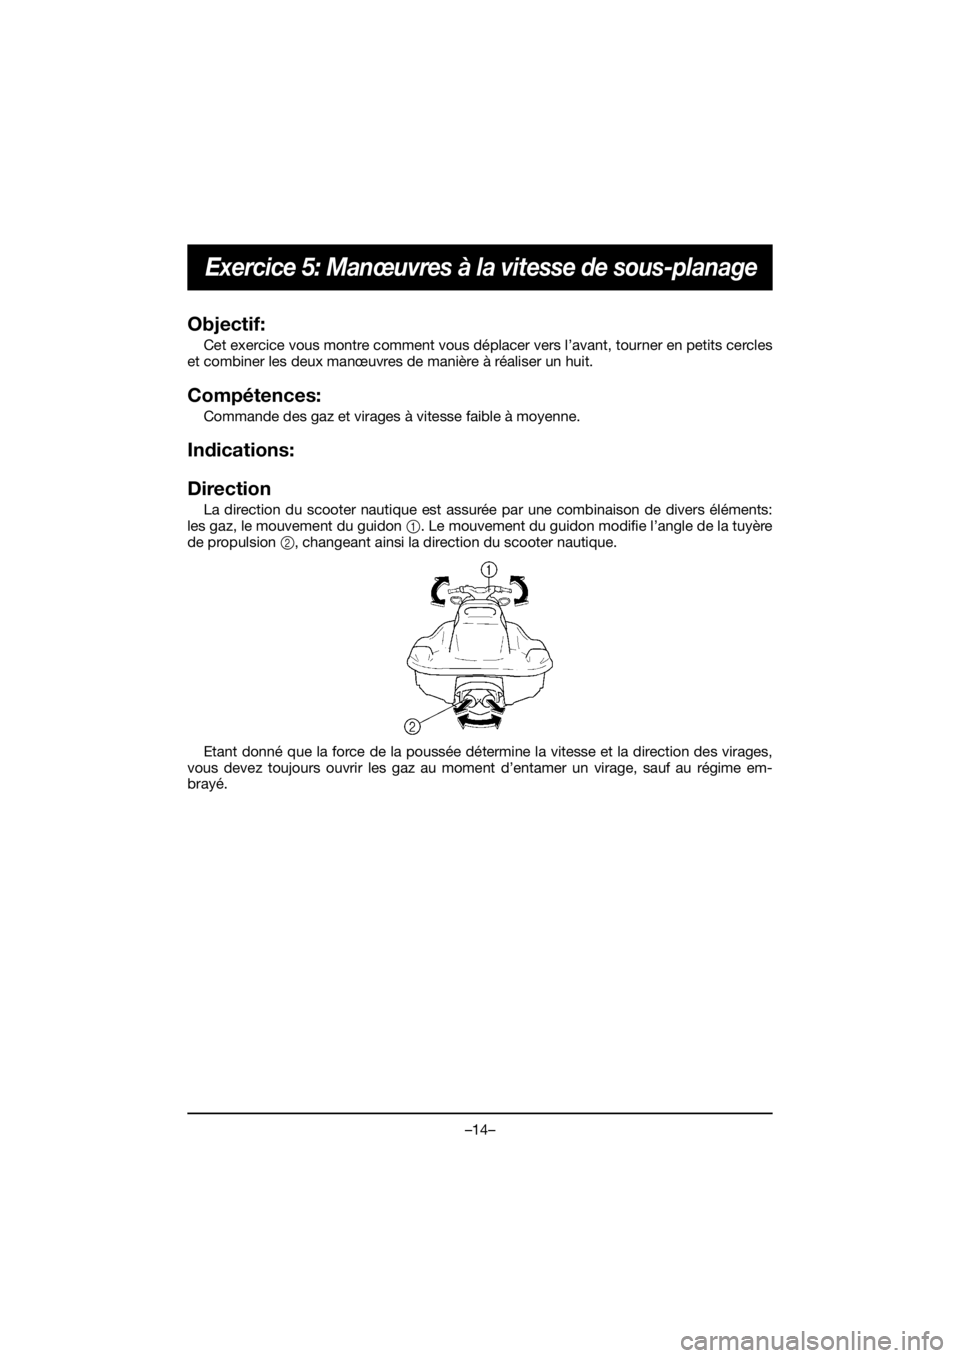 YAMAHA EX 2019  Notices Demploi (in French) –14–
Exercice 5: Manœuvres à la vitesse de sous-planage
Objectif: 
Cet exercice vous montre comment vous déplacer vers l’avant, tourner en petits cercles
et combiner les deux manœuvres de ma